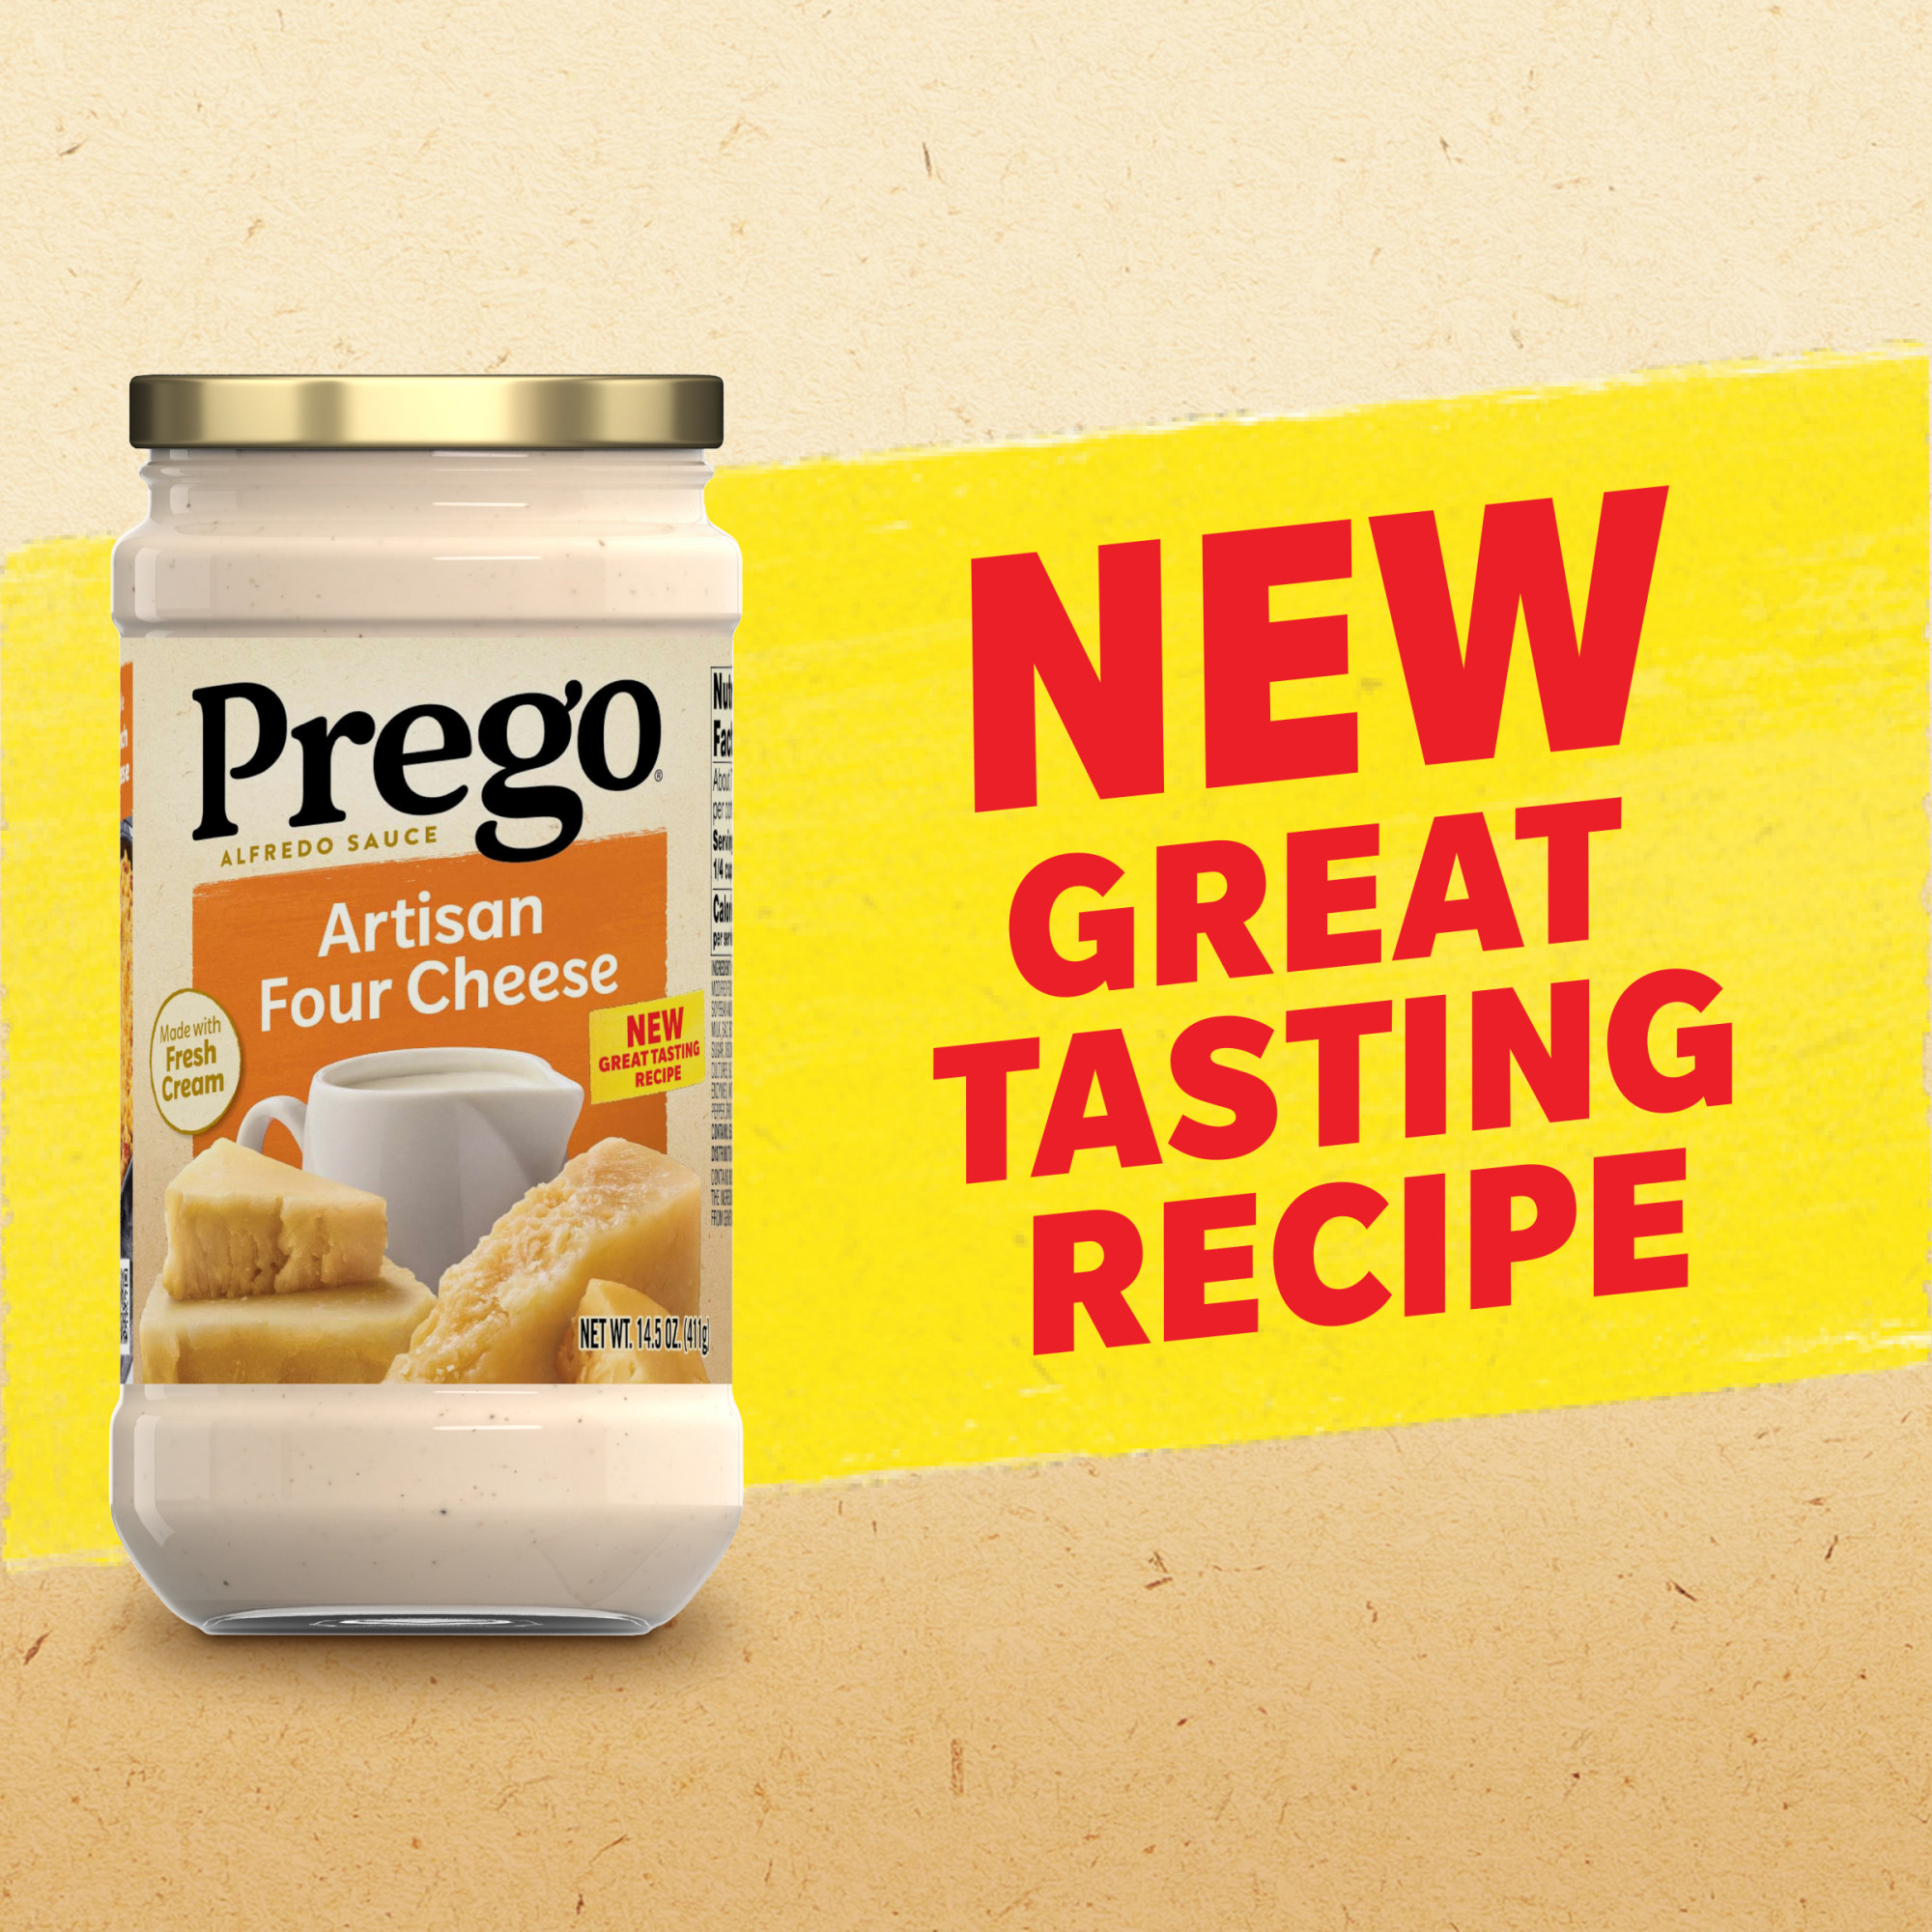 Prego Artisan Four Cheese Alfredo Pasta Sauce, 14.5 oz Jar - image 3 of 12